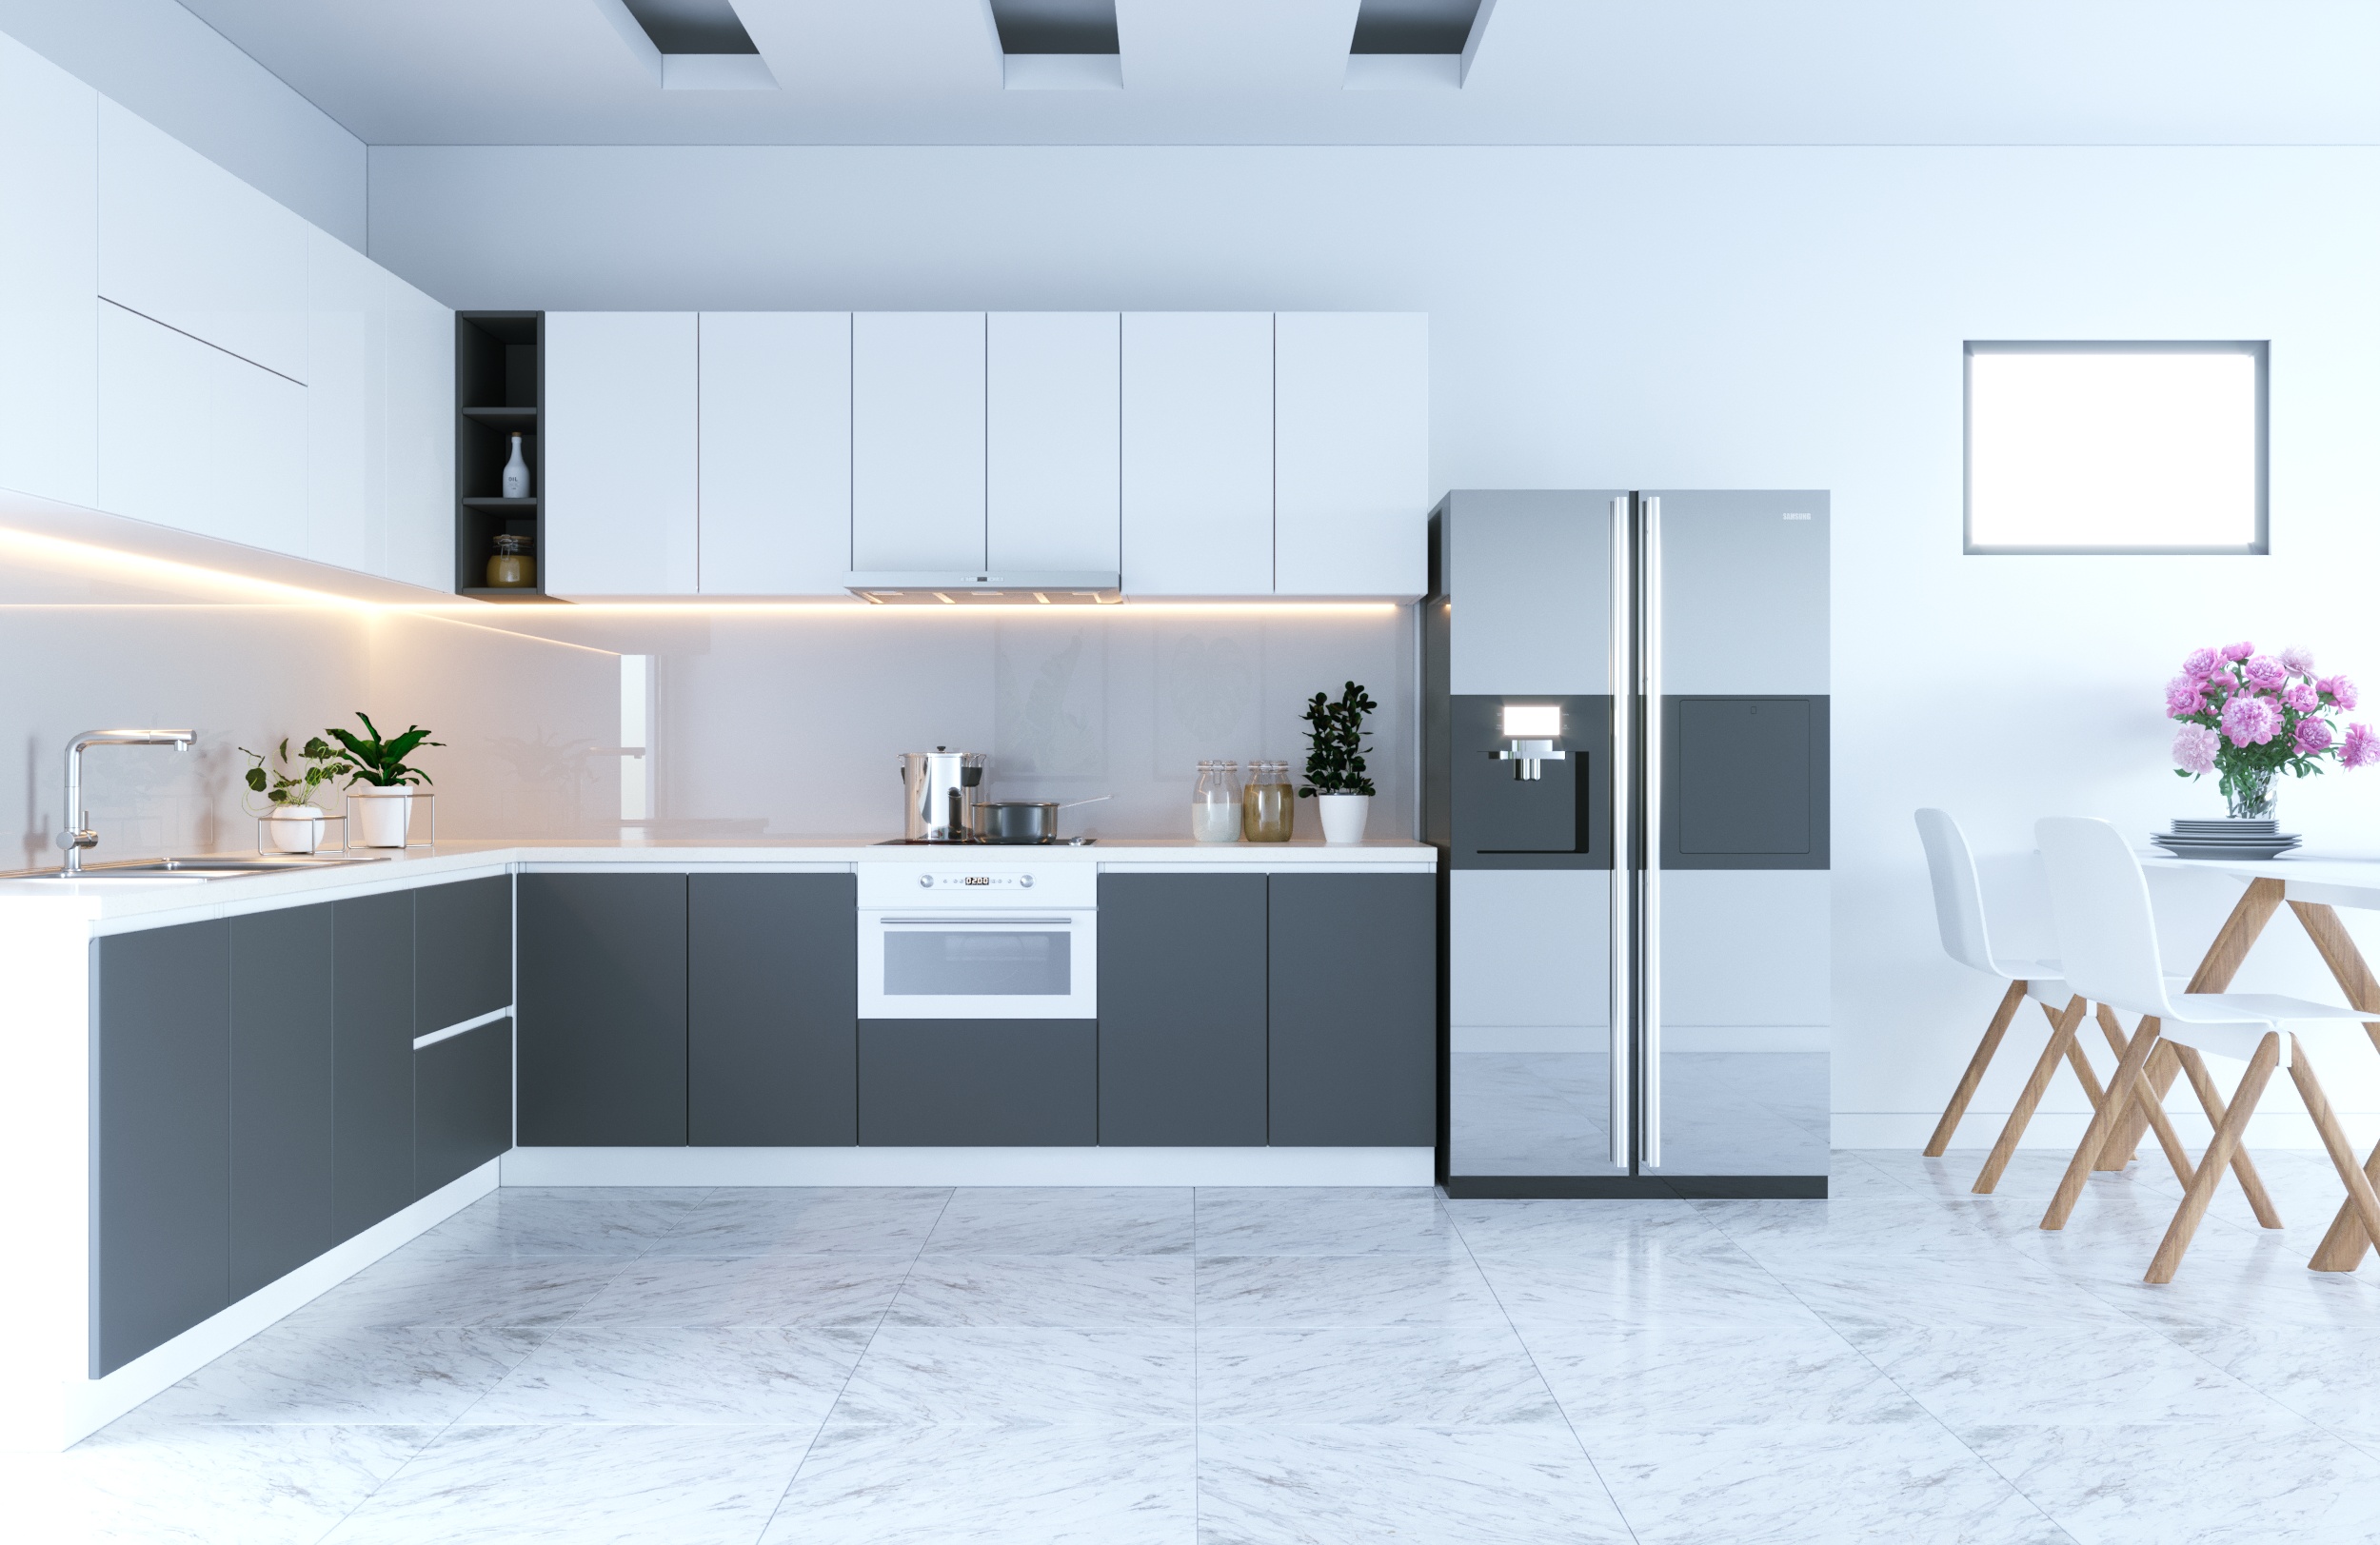 Tủ bếp là một phần cực kỳ quan trọng trong thiết kế không gian bếp của bạn. Với sự đa dạng và đẹp mắt của các mẫu tủ bếp, bạn sẽ không khỏi tìm được chiếc tủ phù hợp với nhu cầu của mình.